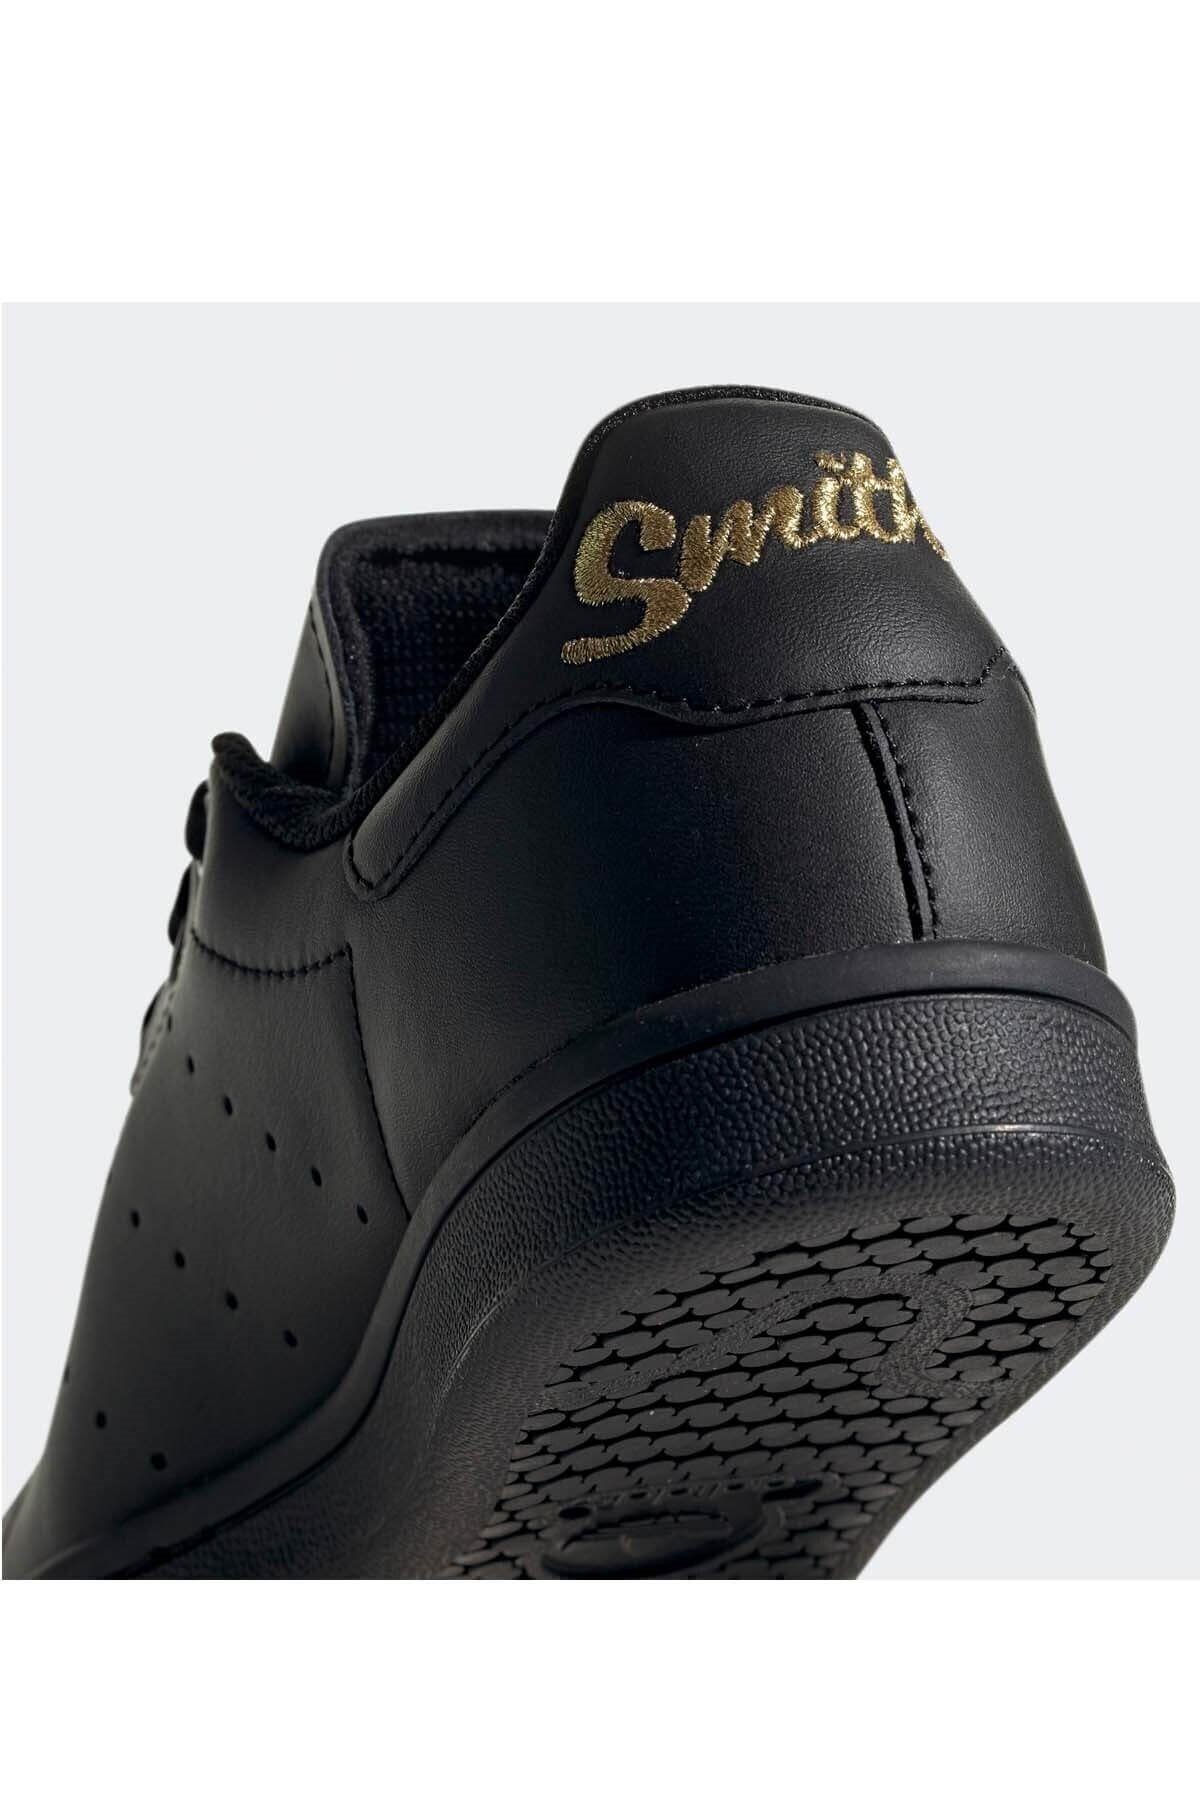 Adidas Stan Smıth Kadın Günlük Spor Ayakkabı EF4914-Siyah | sahilspor.com